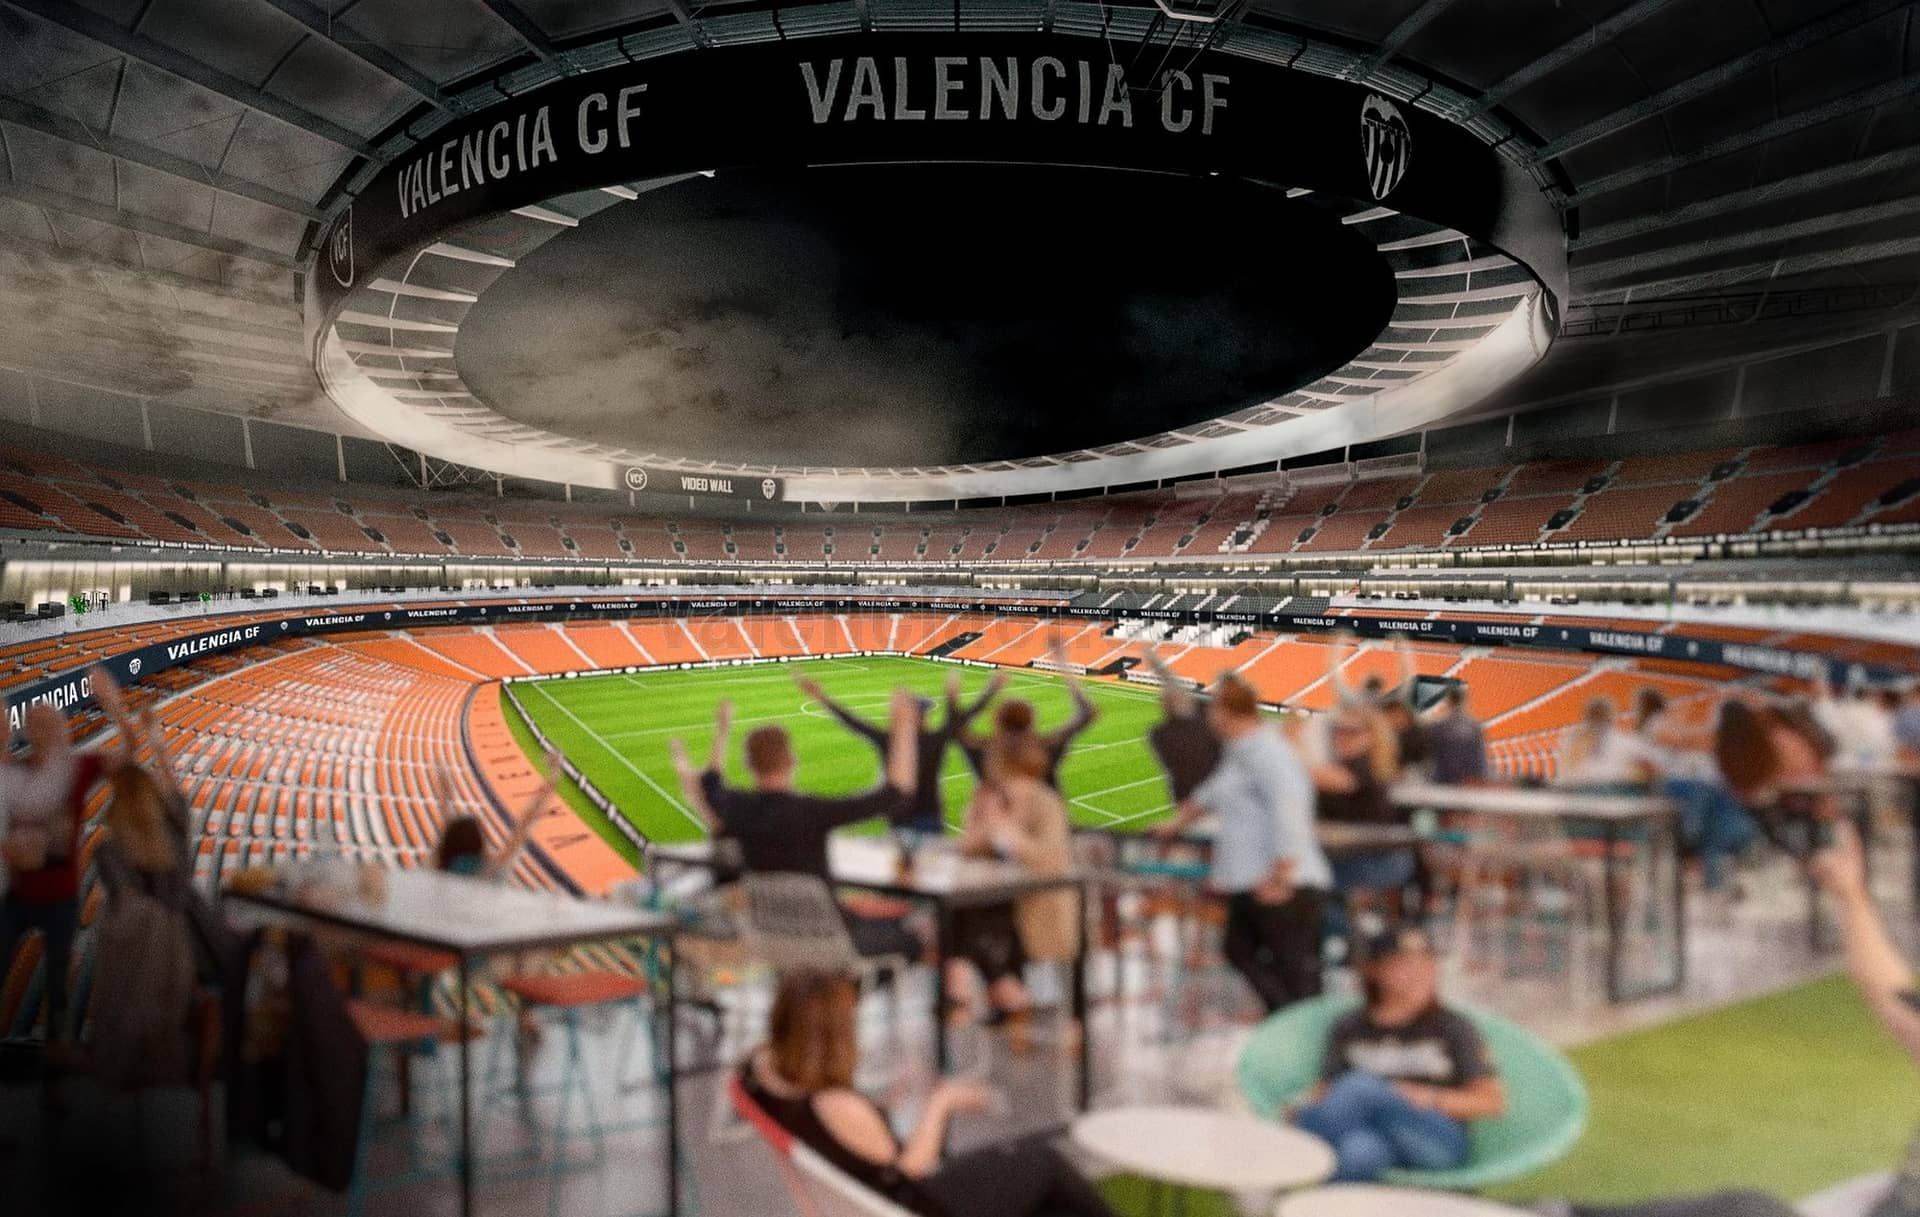 Las imágenes del nuevo proyecto del Valencia CF para el nuevo Mestalla